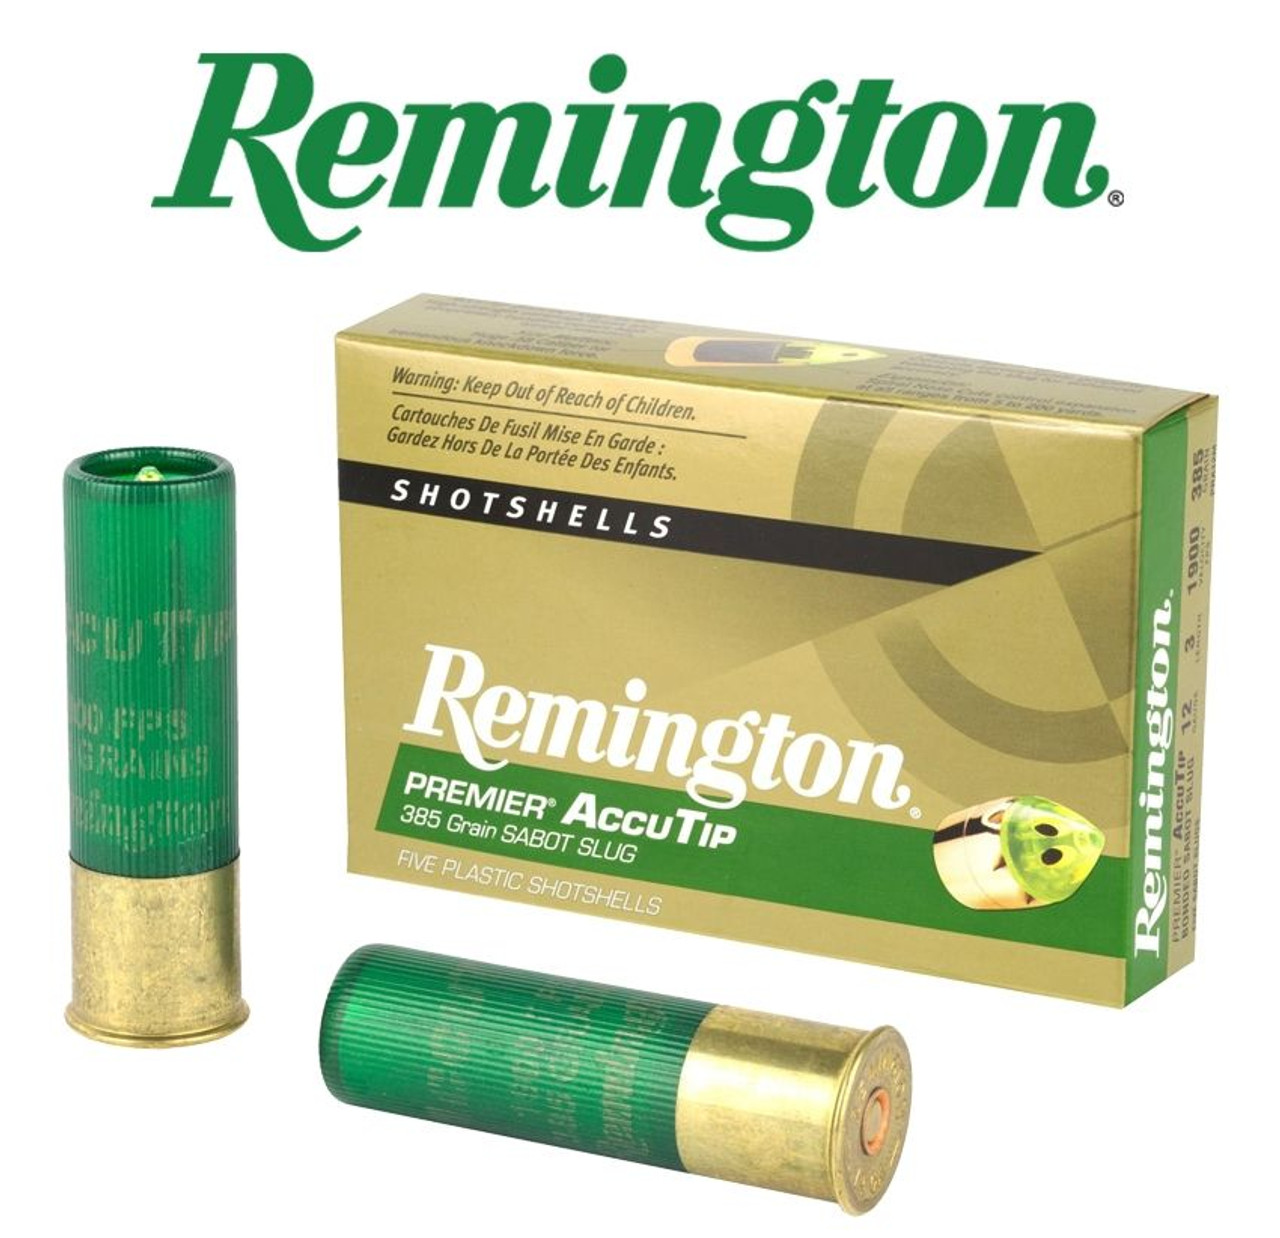 Remington Premier Accutip 12 ga. 2 3/4'' 385 gr - 5 Rounds